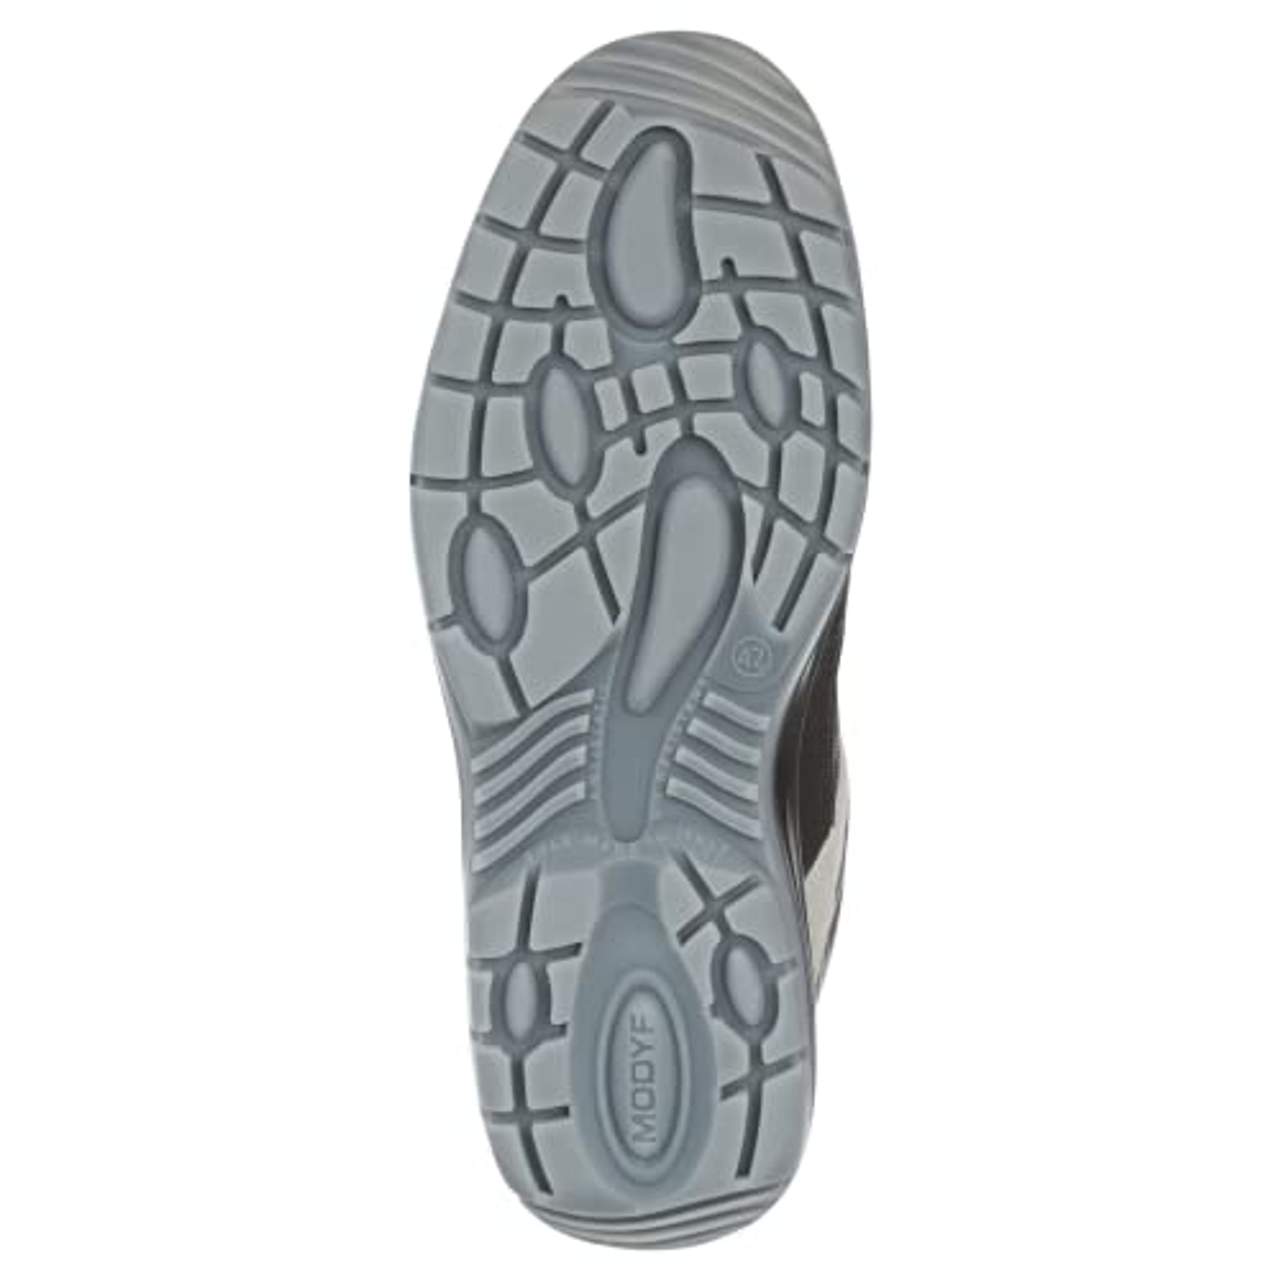 WÜRTH MODYF Sicherheitsstiefel S3 SRC Stretch X schwarz: Der zertifizierte Schuh